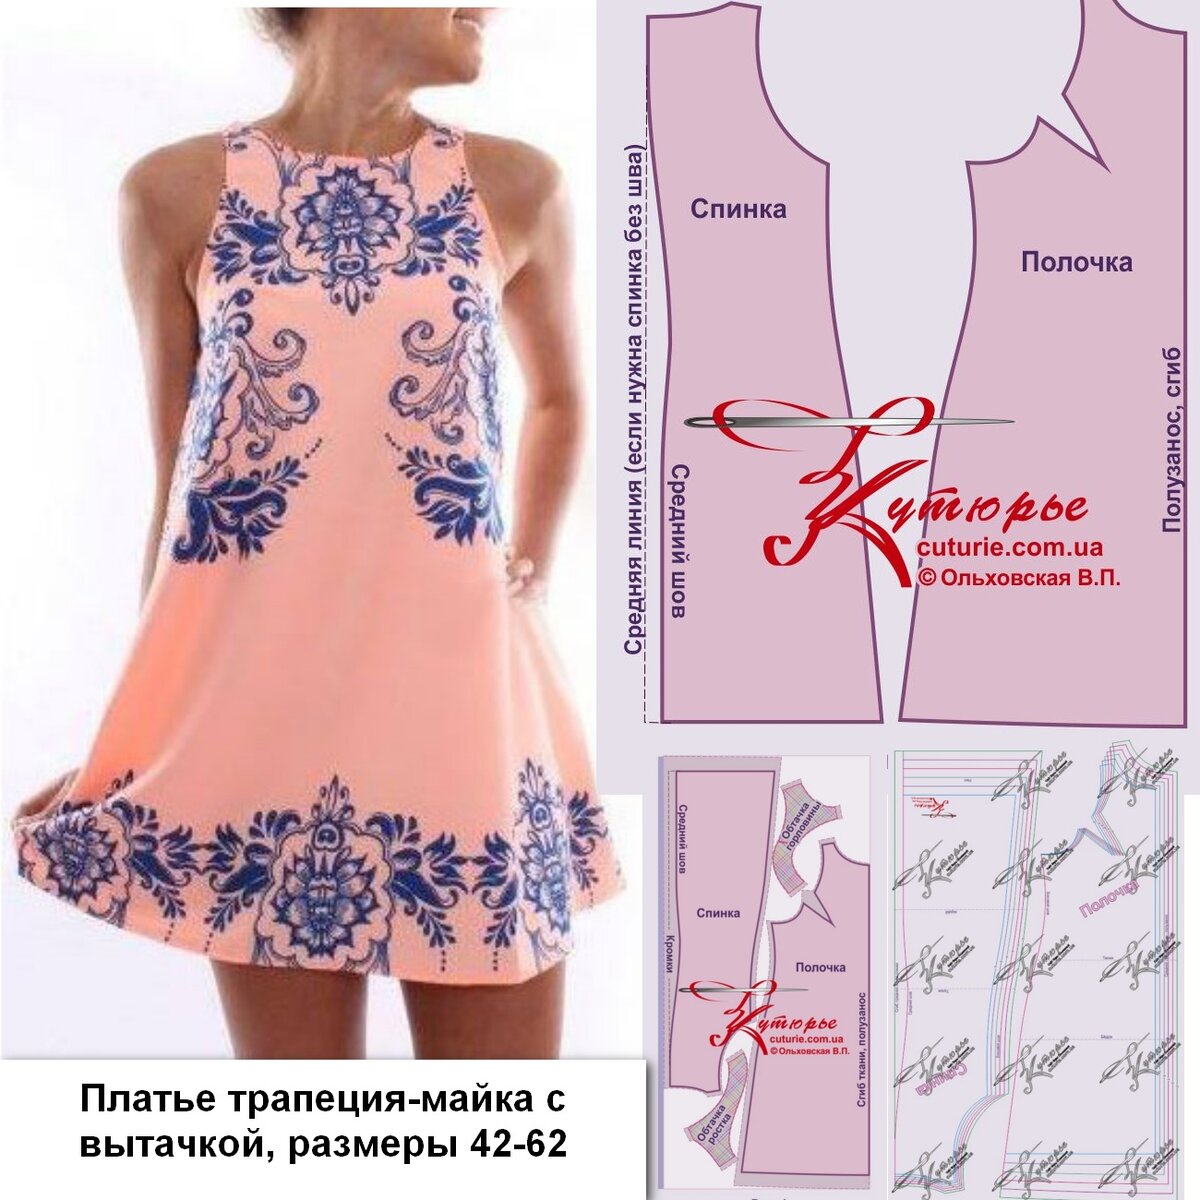 Выкройка бумажная KIS платье женское МОД 4975 в натуральную величину с припусками 54 размер